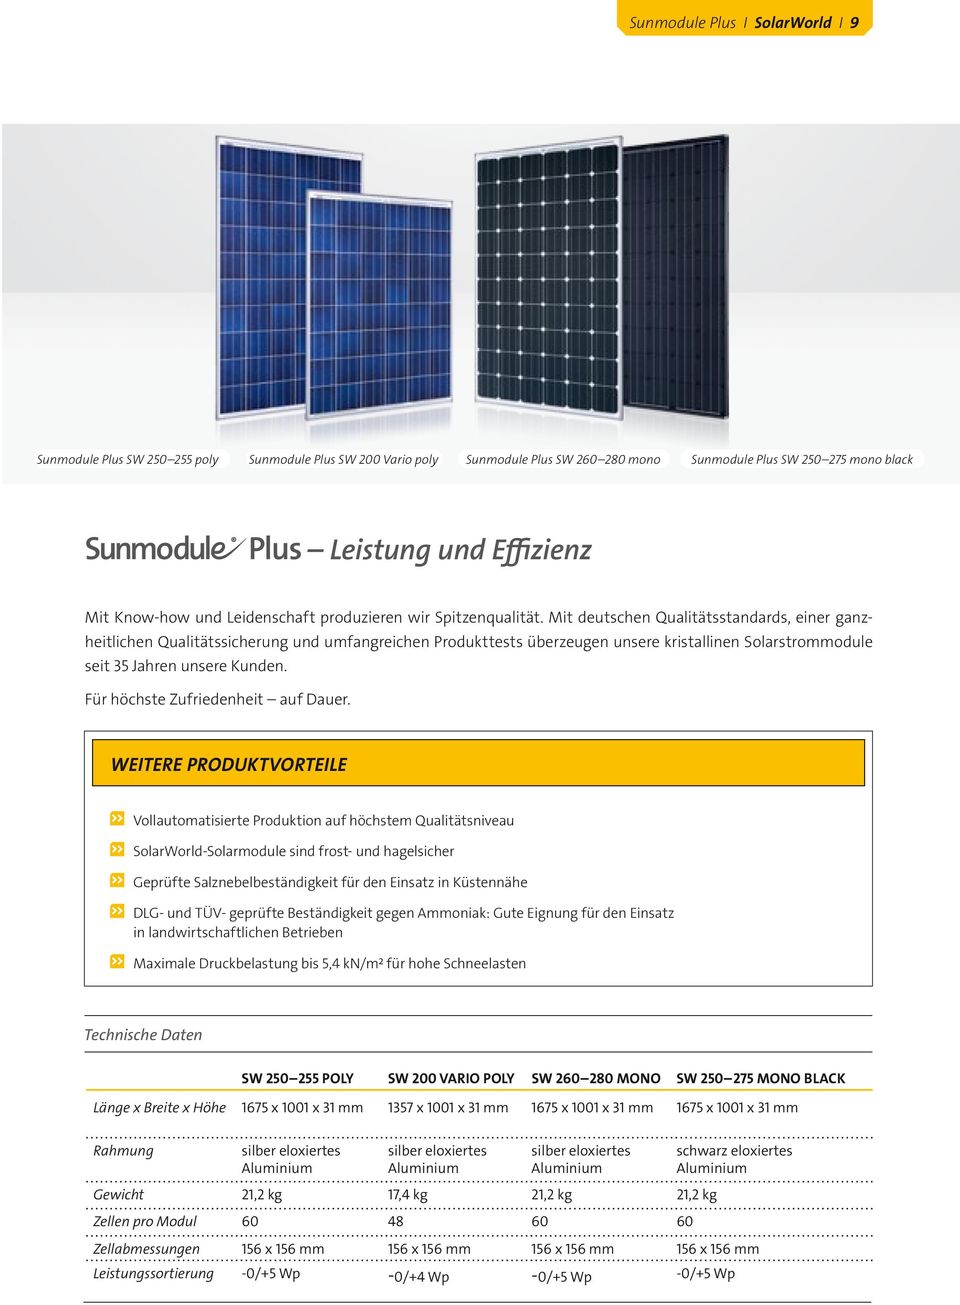 Mit deutschen Qualitätsstandards, einer ganzheitlichen Qualitätssicherung und umfangreichen Produkttests überzeugen unsere kristallinen Solarstrommodule seit 35 Jahren unsere Kunden.